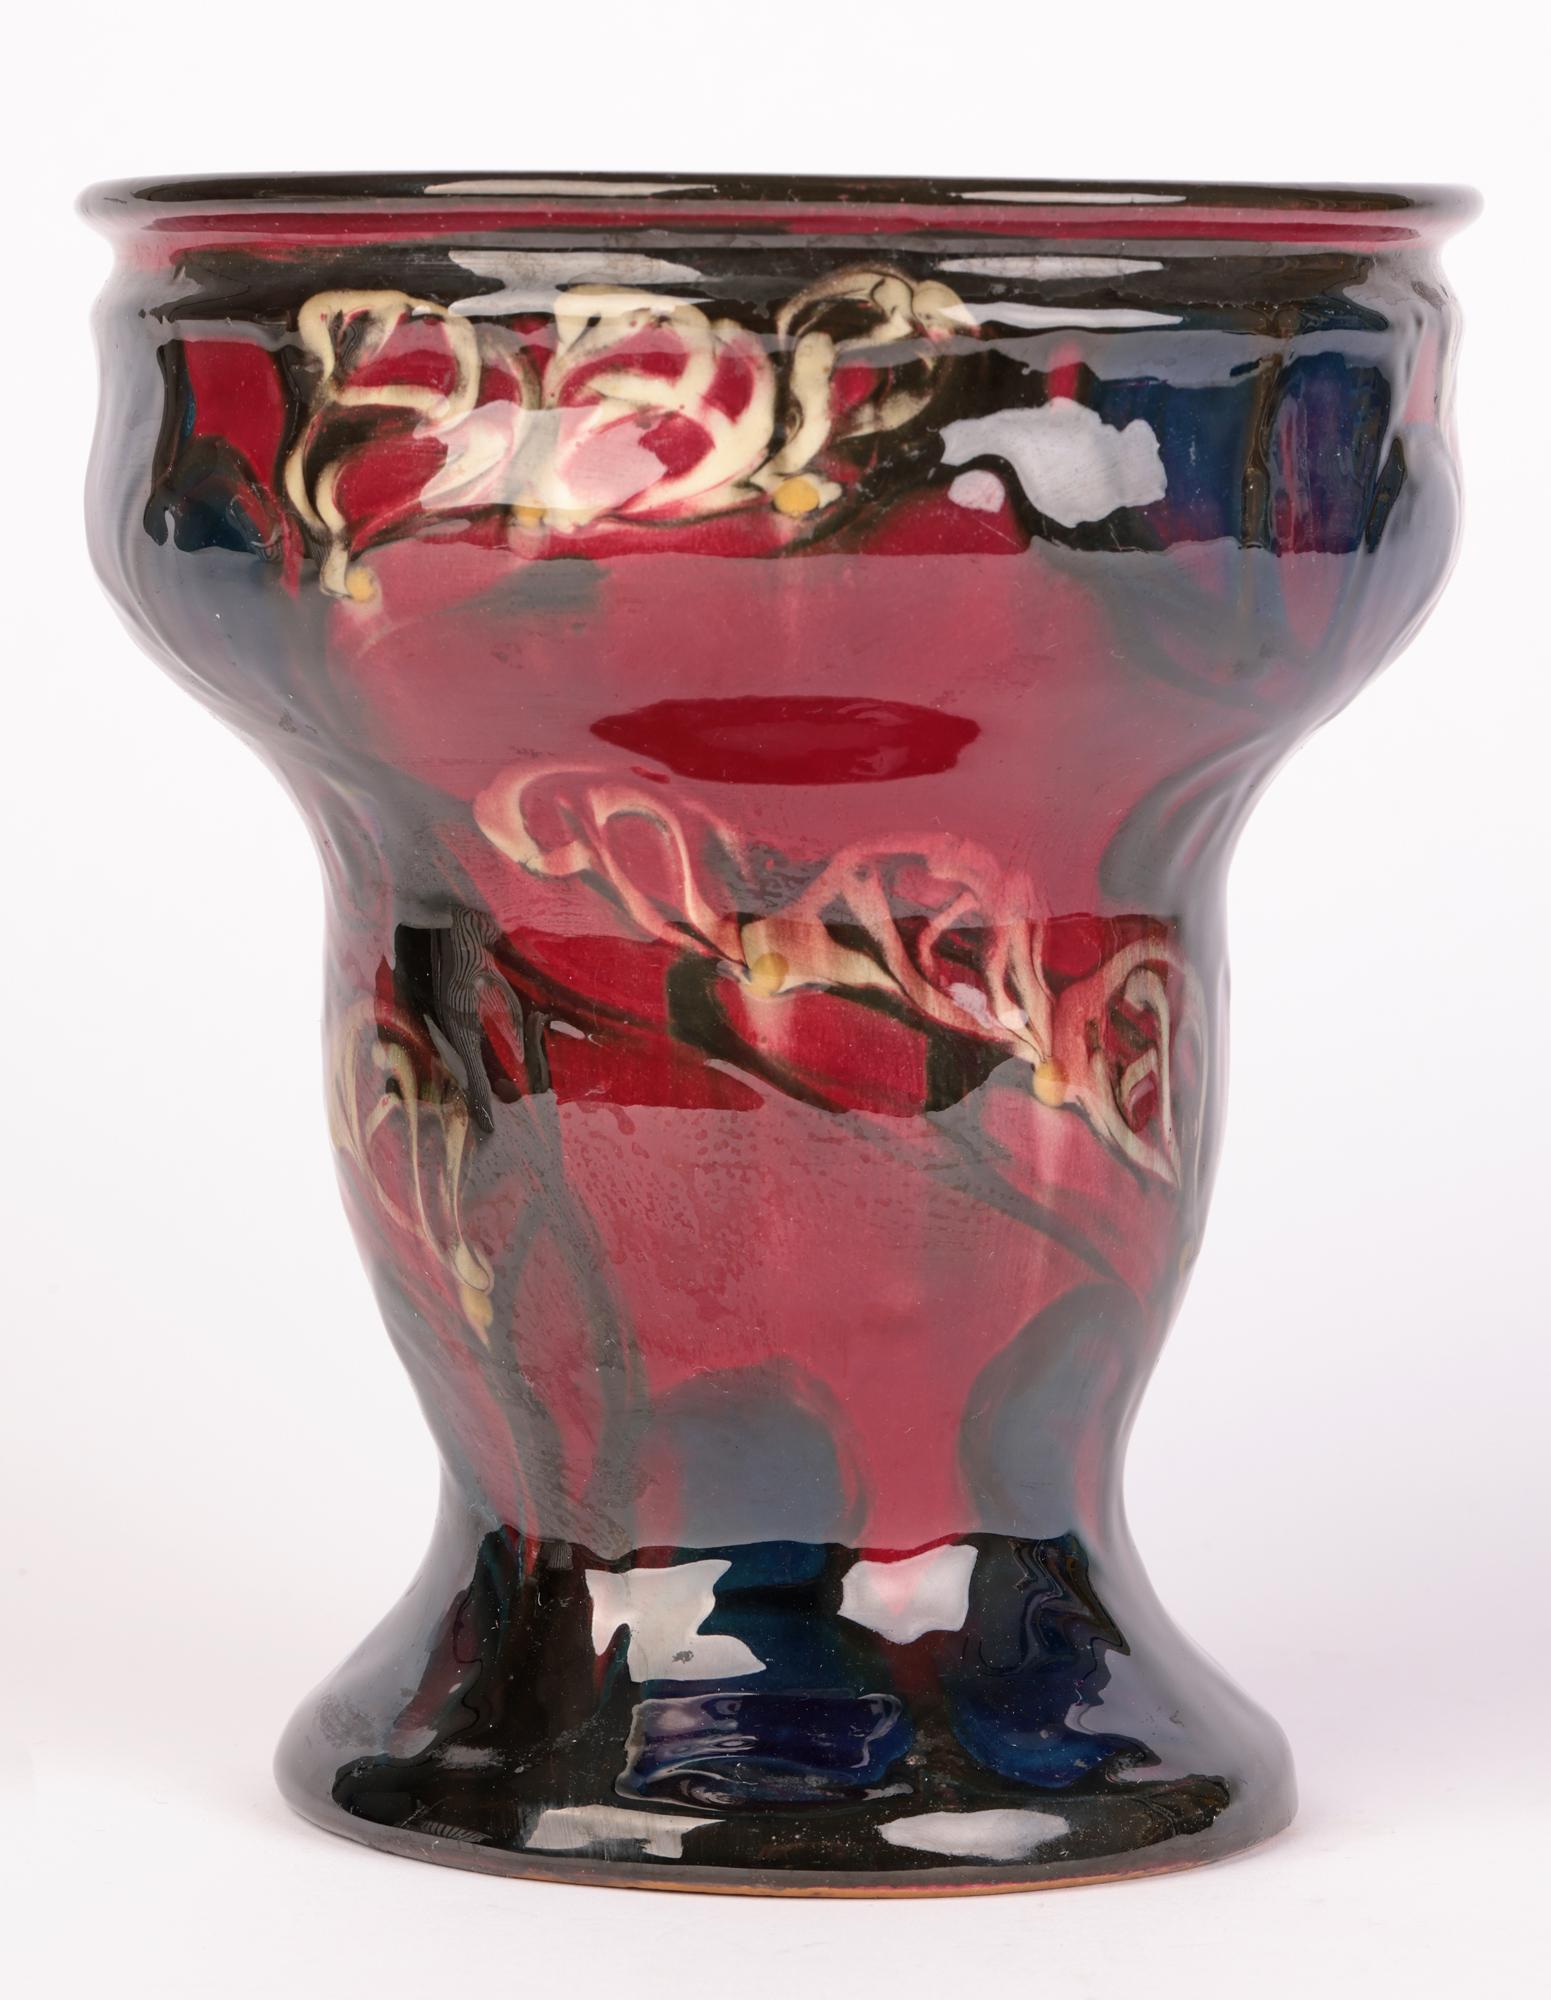 Eiler Londal Danico Skronvirke Art Pottery Abstract Vase For Sale 4